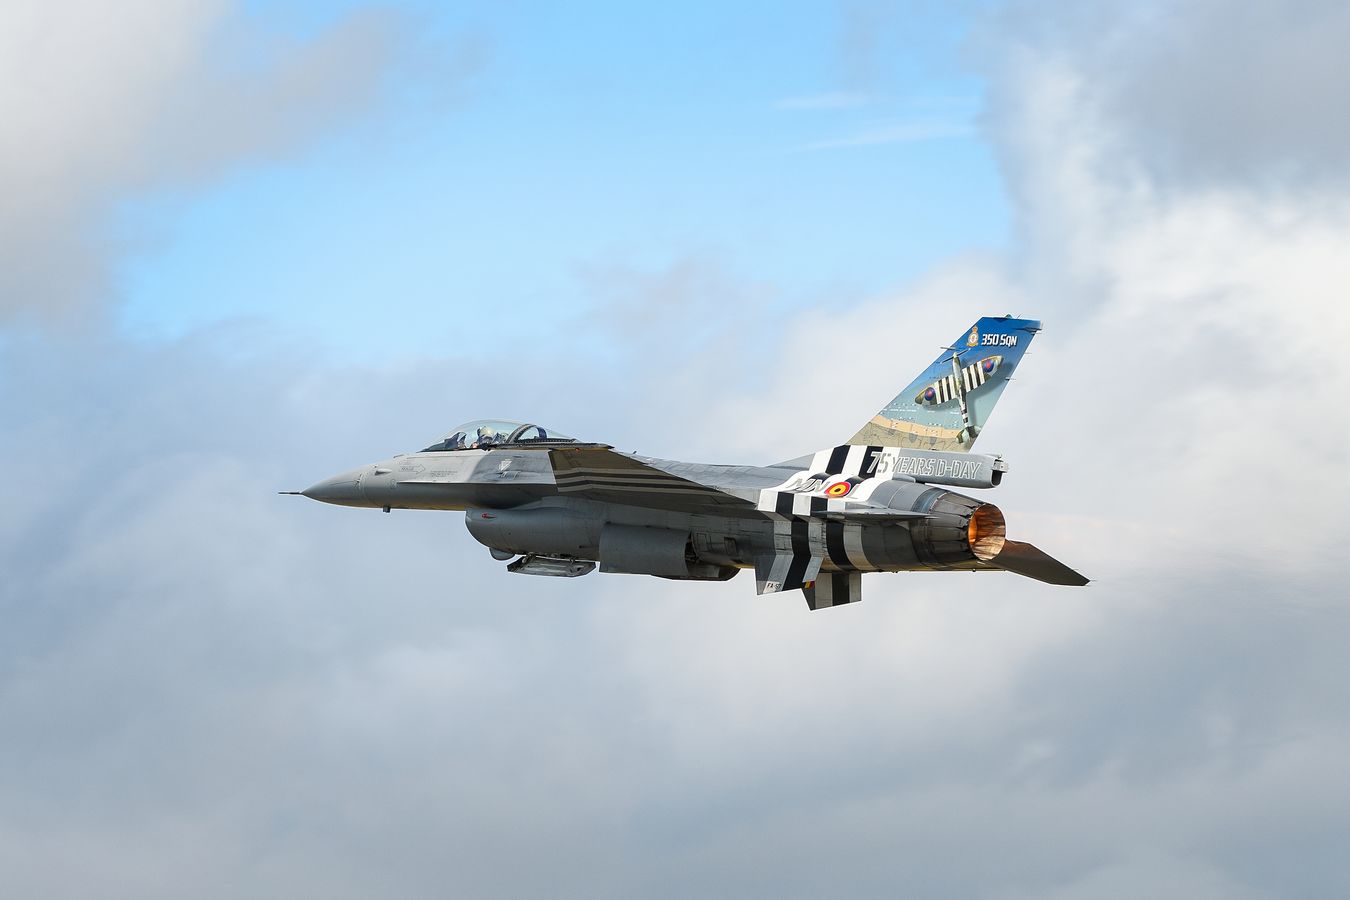 F-16 v invzaních pruzích